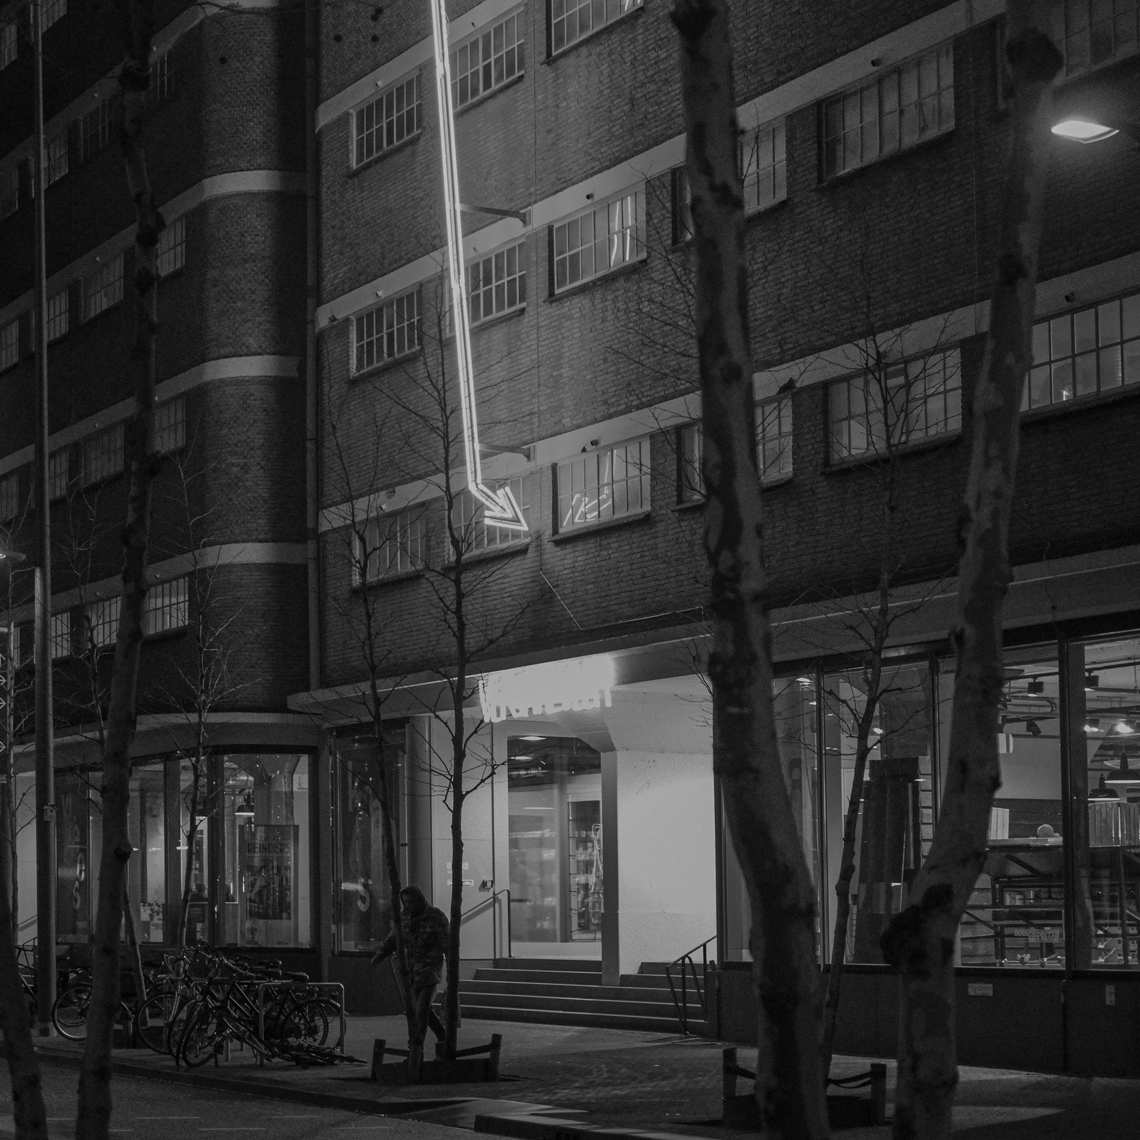 Veemgebouw ("Warehouse Building") from 1942 where tvs, radios and other items were warehoused.Dit opvallende en grote gebouw uit 1942 werd gebruikt voor de opslag van radio- en televisietoestellen en andere Philips-producten. Het Veemgebouw heeft de status van rijksmonument.